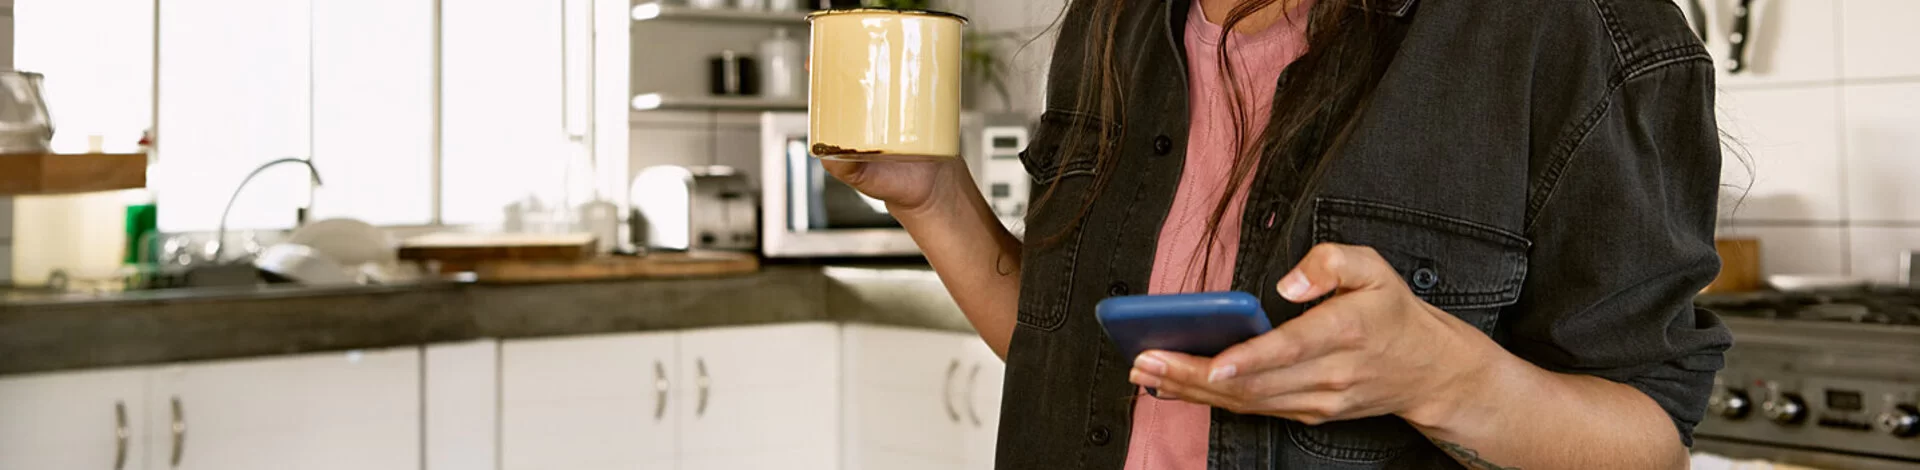 Frau steht in Küche und schaut auf Smartphone, sie exportiert ihre Daten aus der AOK Mein Leben-App.